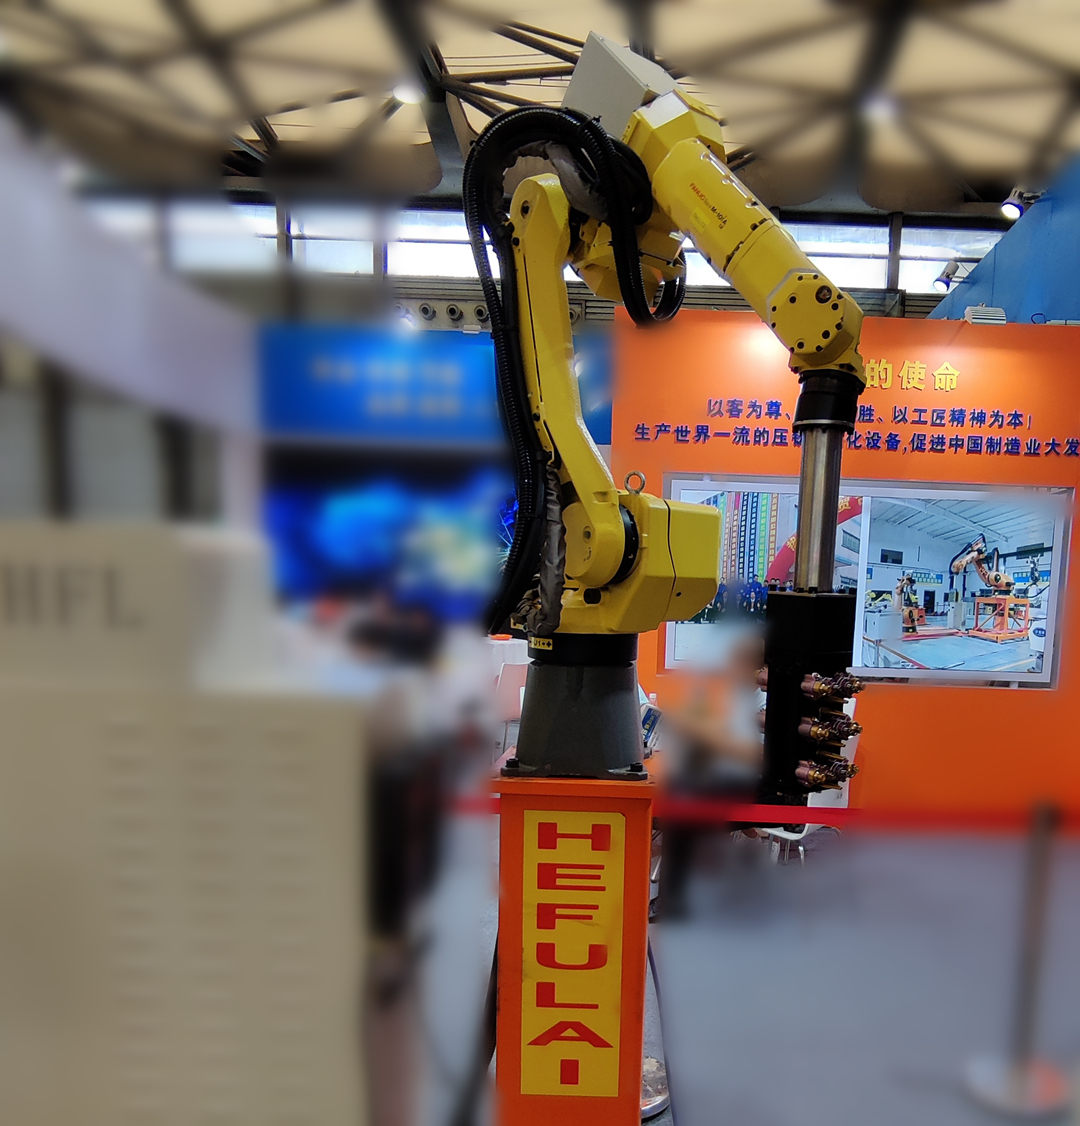 合富莱压铸自动化设备及压铸岛解决方案“登陆”上海